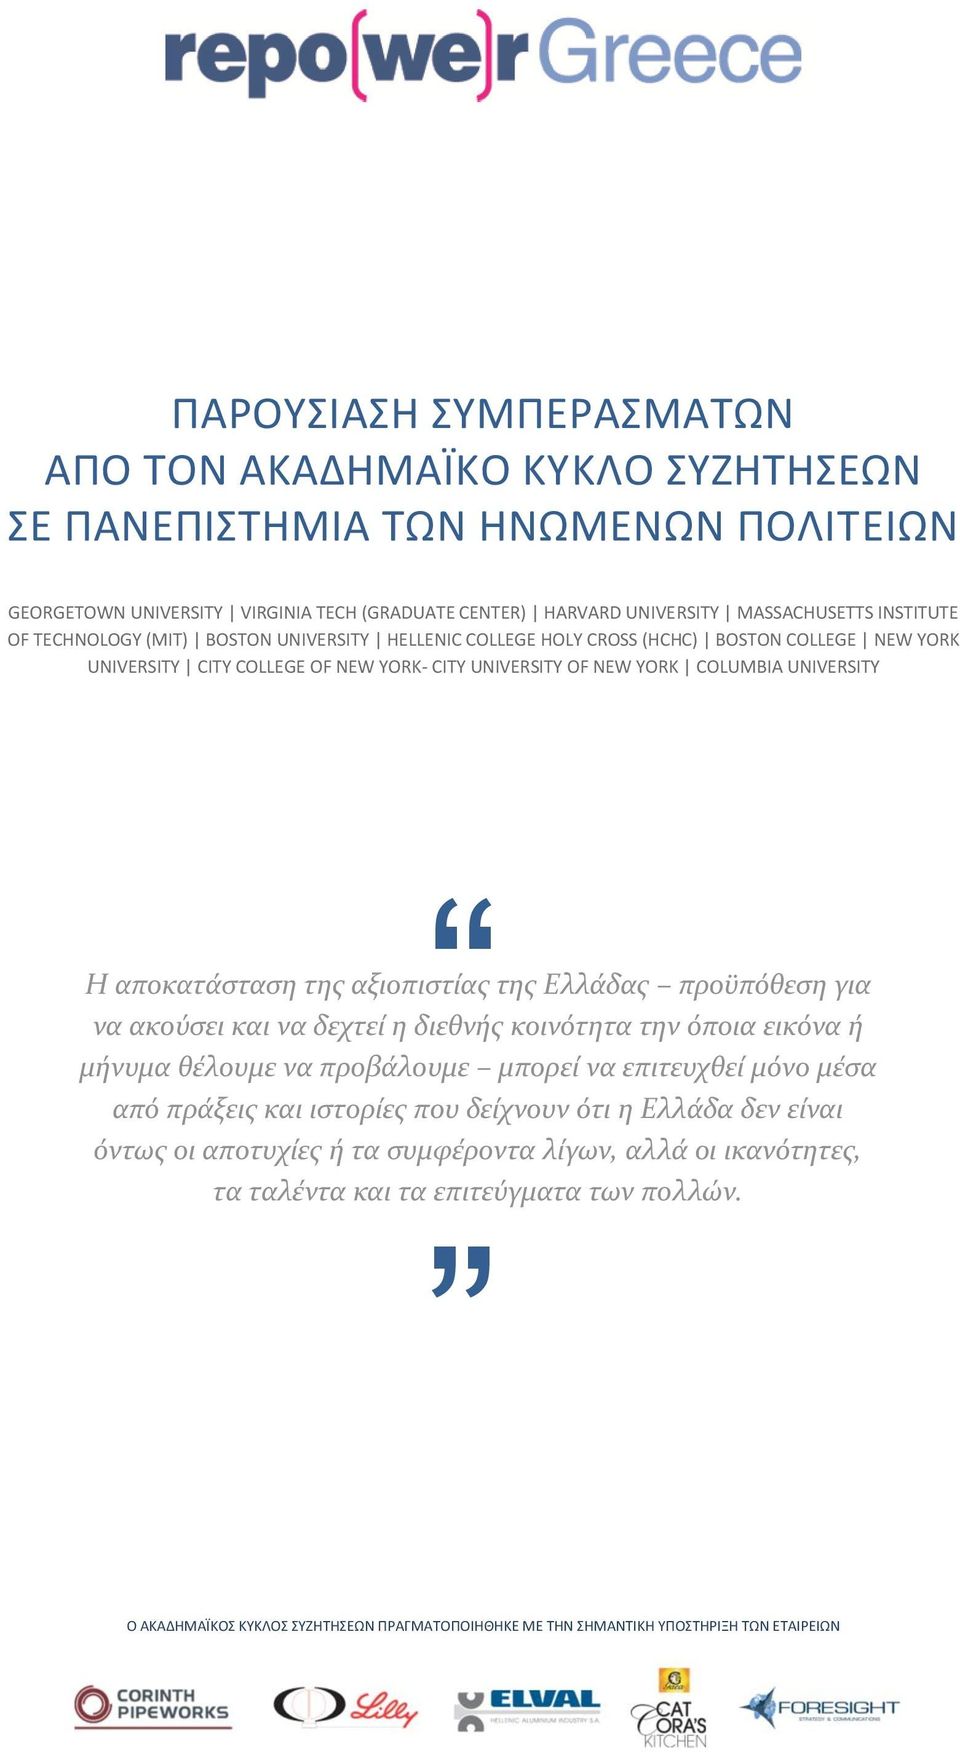 αξιοπιστίας της Ελλάδας προϋπόθεση για να ακούσει και να δεχτεί η διεθνής κοινότητα την όποια εικόνα ή μήνυμα θέλουμε να προβάλουμε μπορεί να επιτευχθεί μόνο μέσα από πράξεις και ιστορίες που